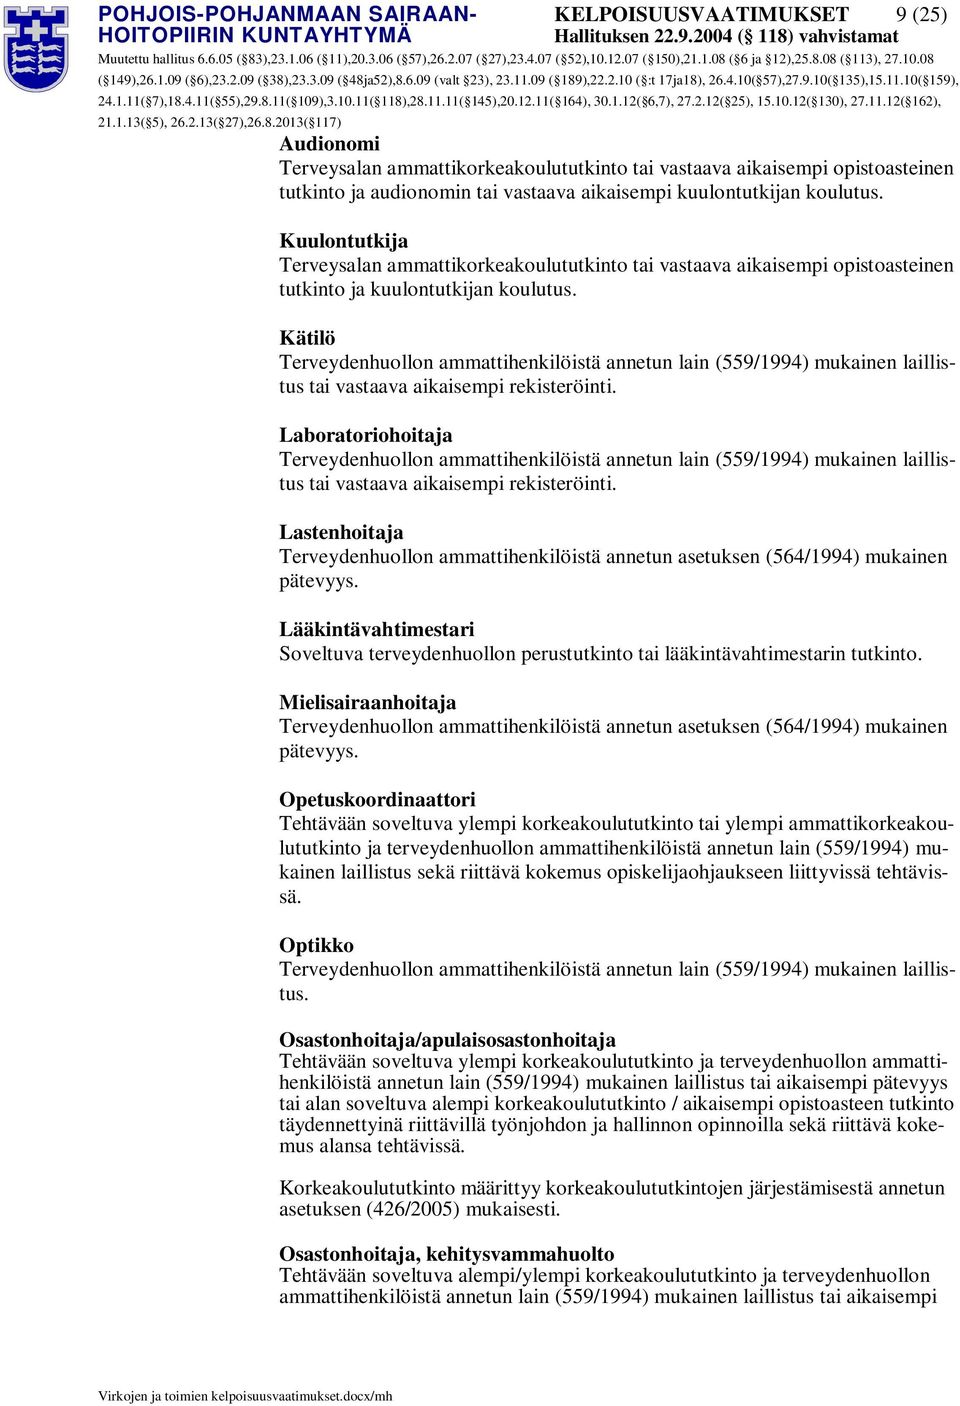 Laboratoriohoitaja tai vastaava aikaisempi rekisteröinti. Lastenhoitaja Terveydenhuollon ammattihenkilöistä annetun asetuksen (564/1994) mukainen pätevyys.